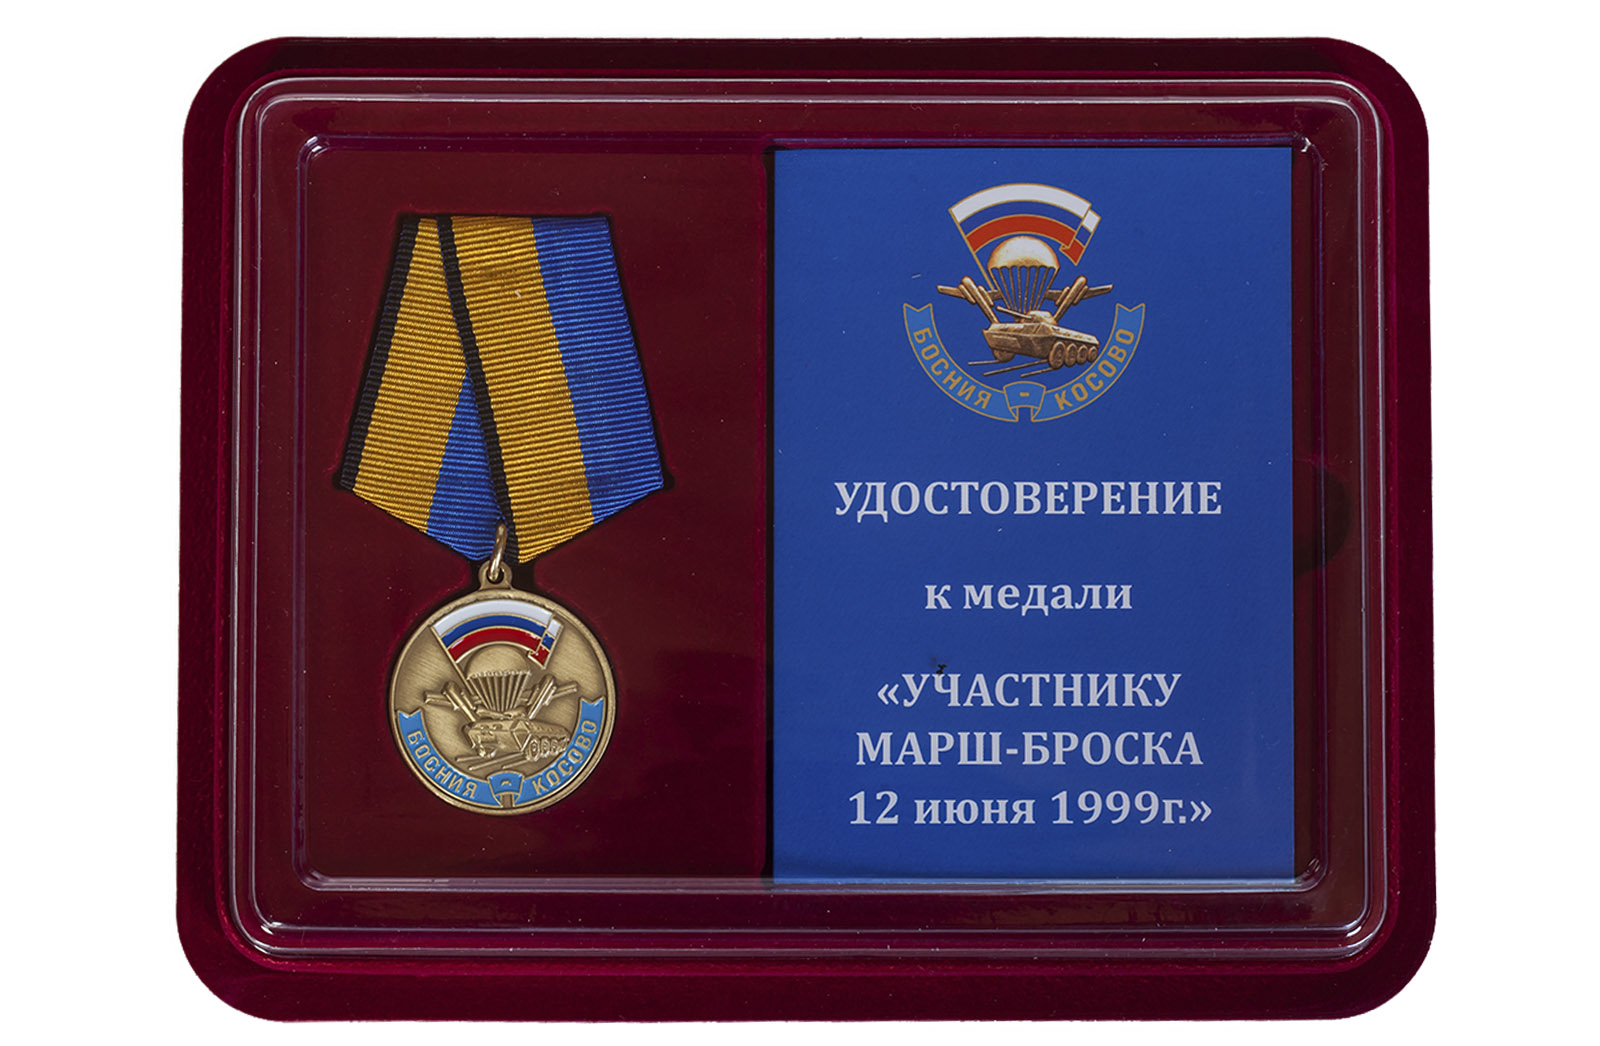 Купить памятную медаль Участнику марш-броска 12.06.1999 г. Босния-Косово в подарок